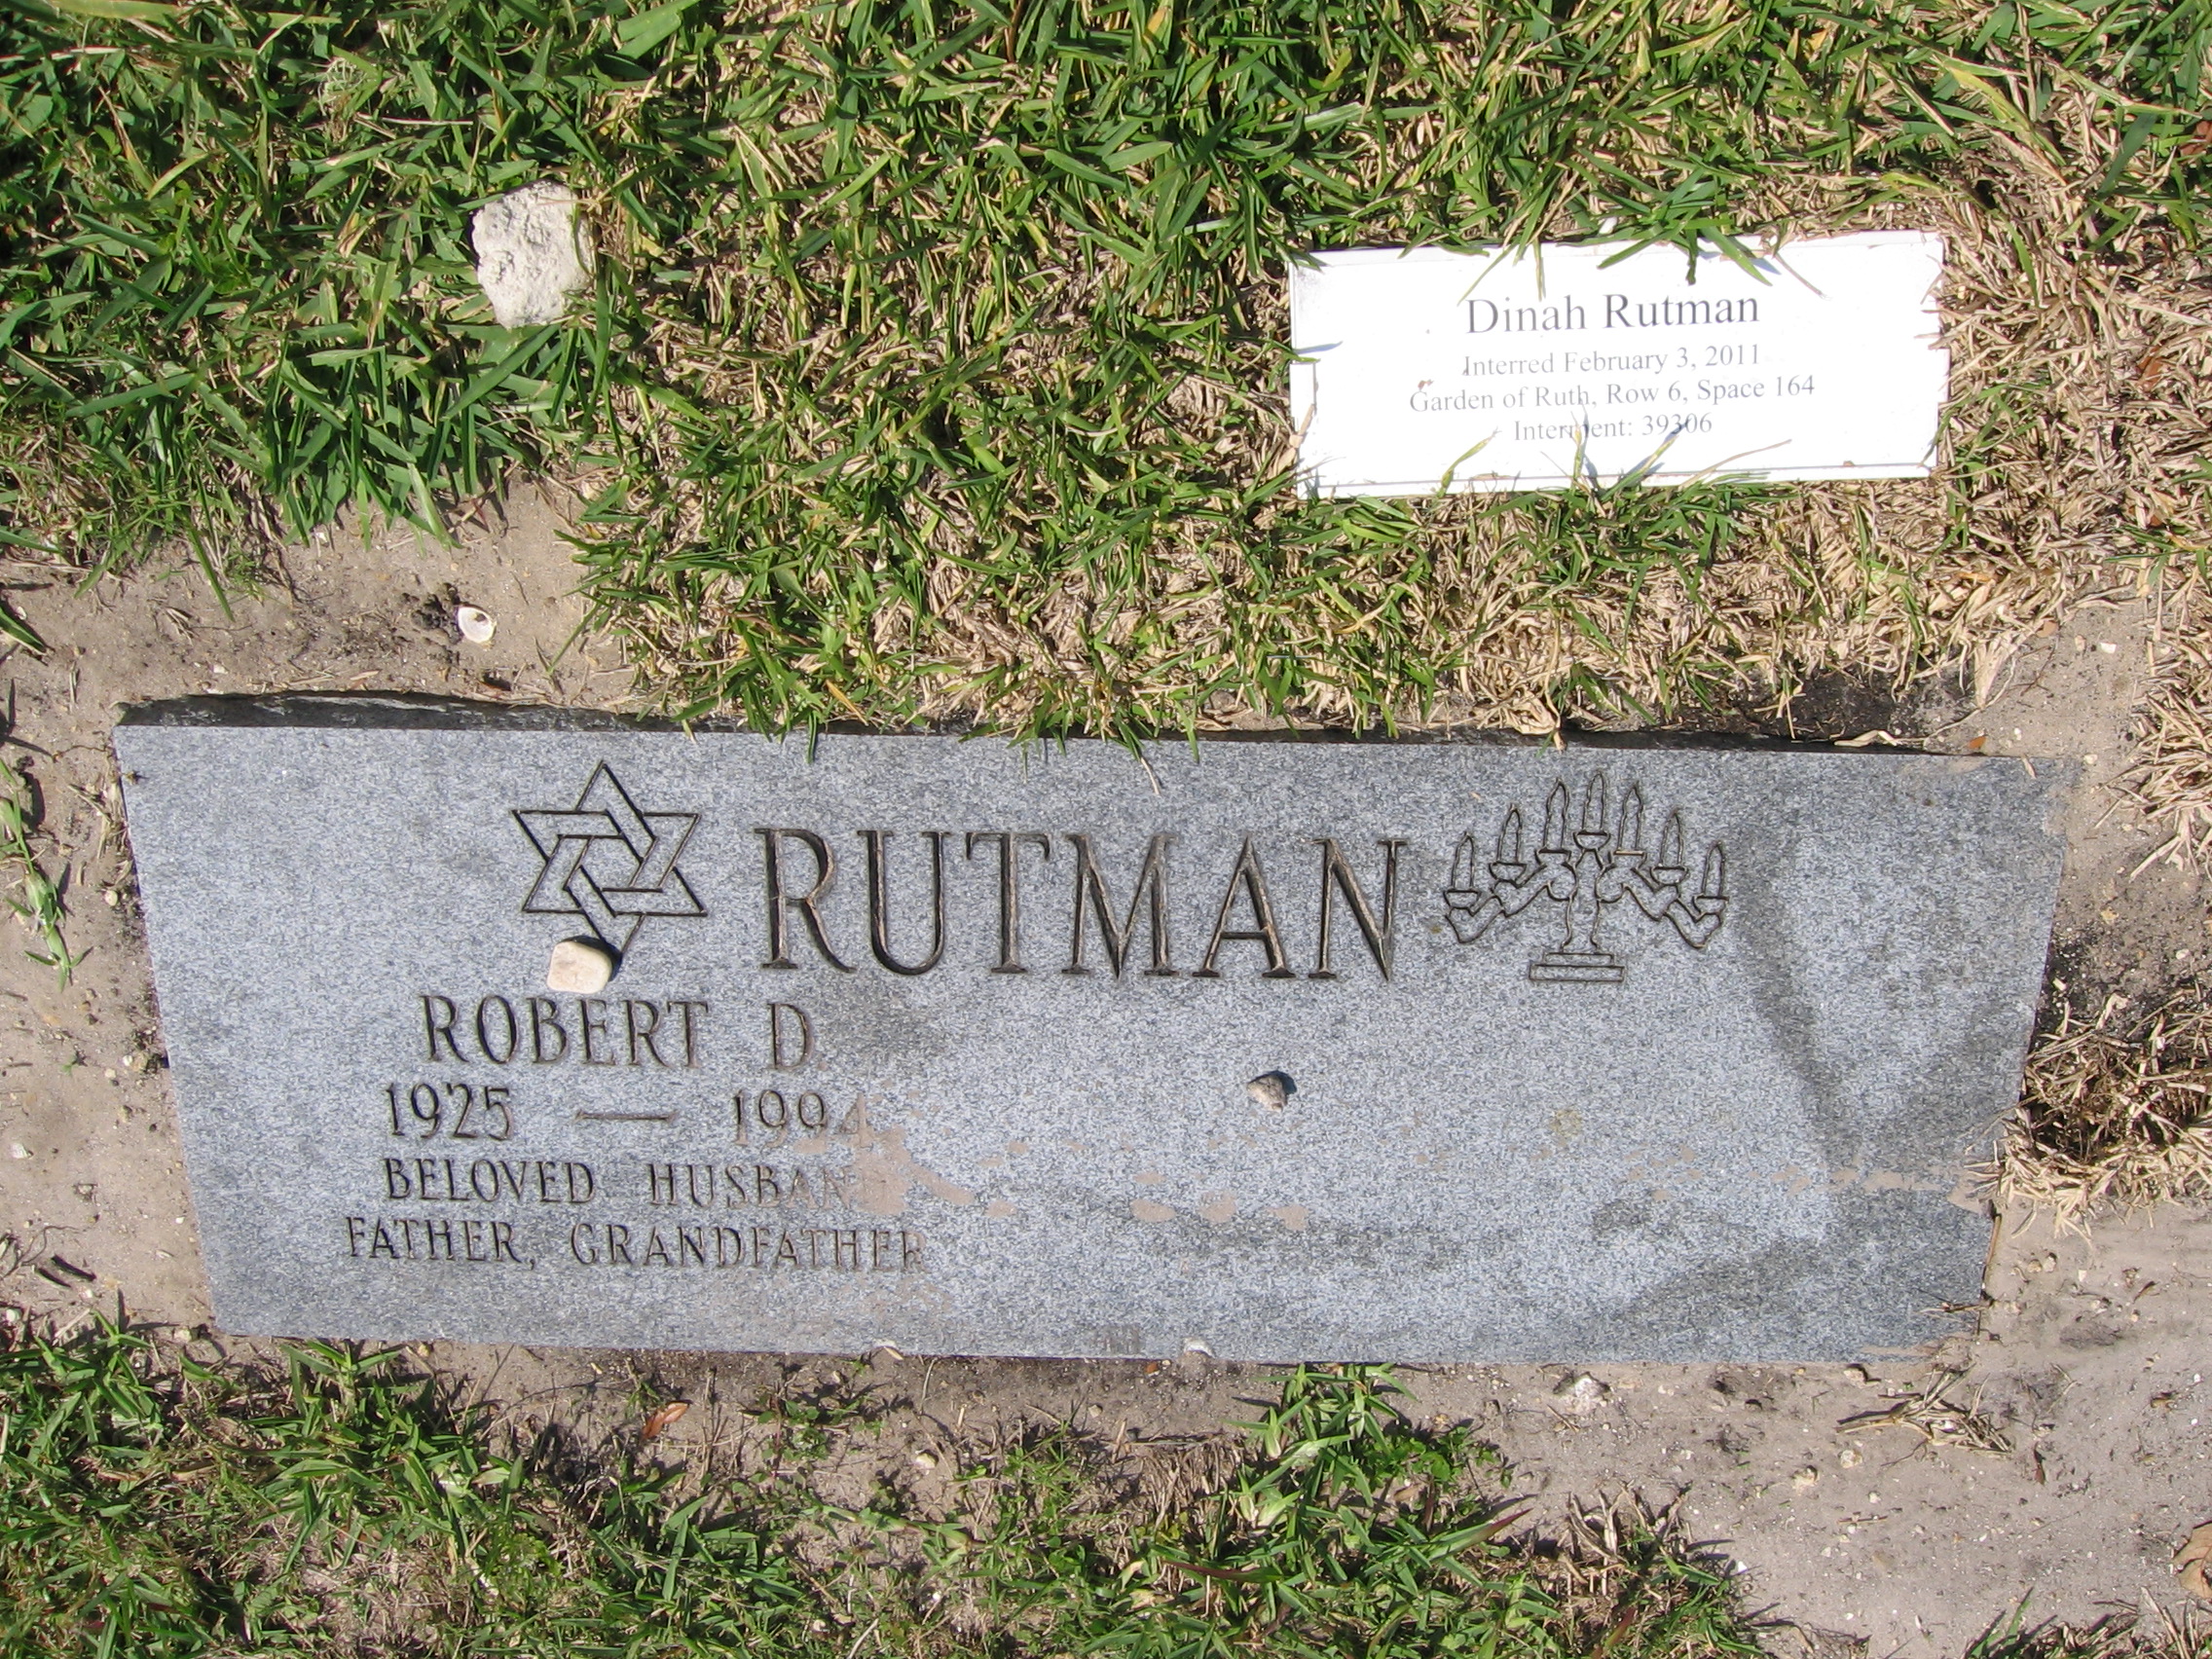 Robert D Rutman